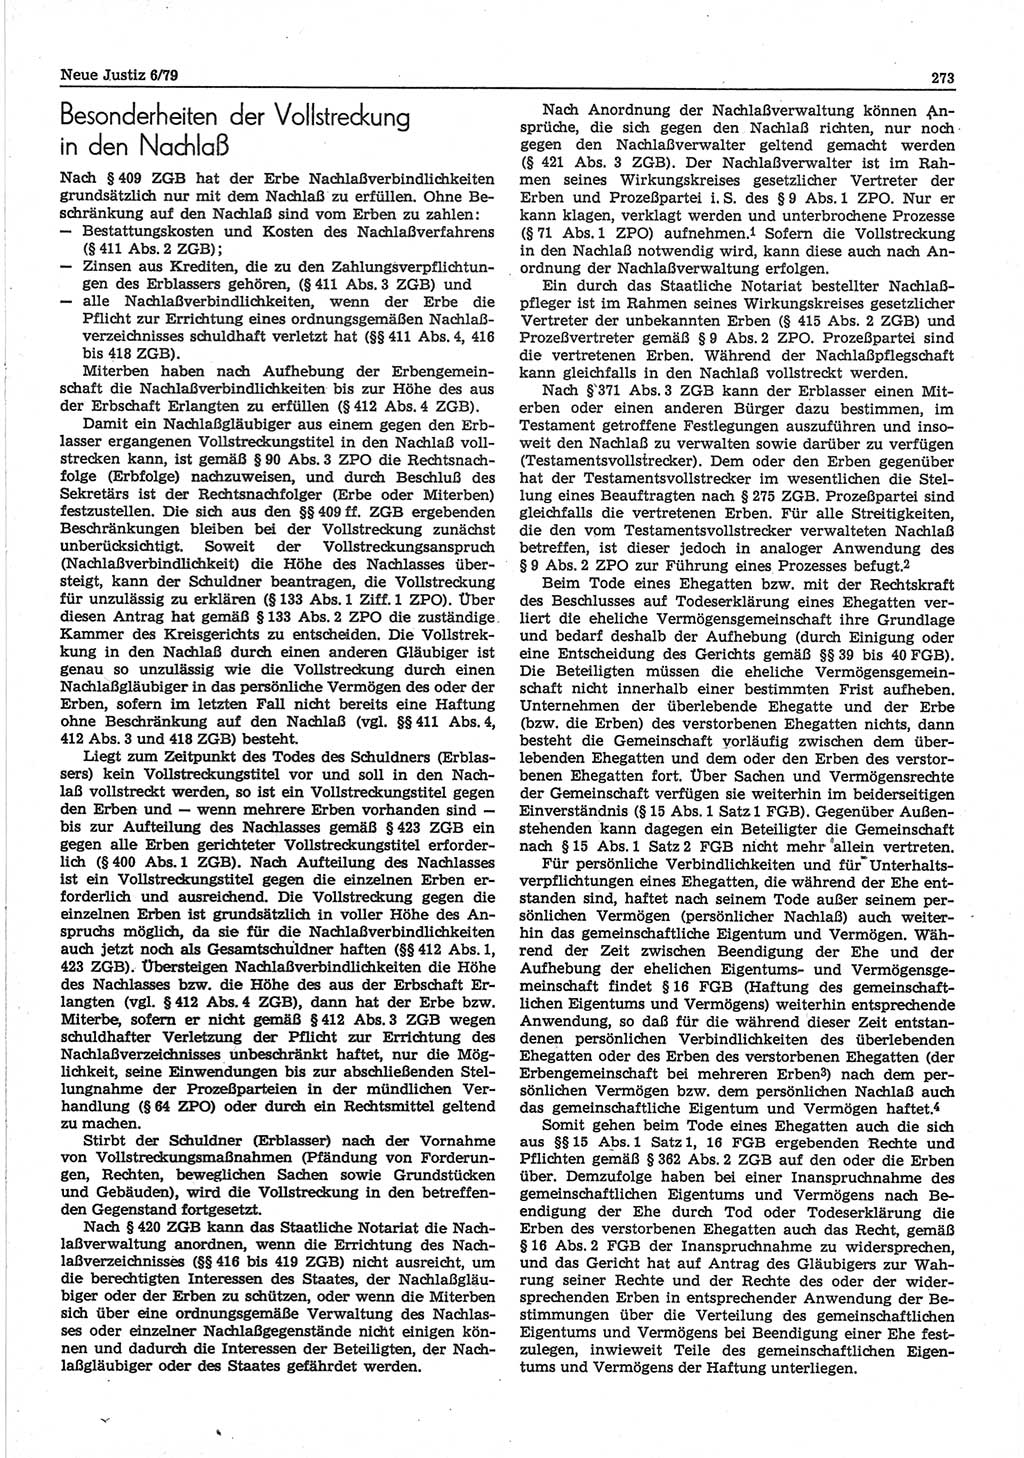 Neue Justiz (NJ), Zeitschrift für sozialistisches Recht und Gesetzlichkeit [Deutsche Demokratische Republik (DDR)], 33. Jahrgang 1979, Seite 273 (NJ DDR 1979, S. 273)